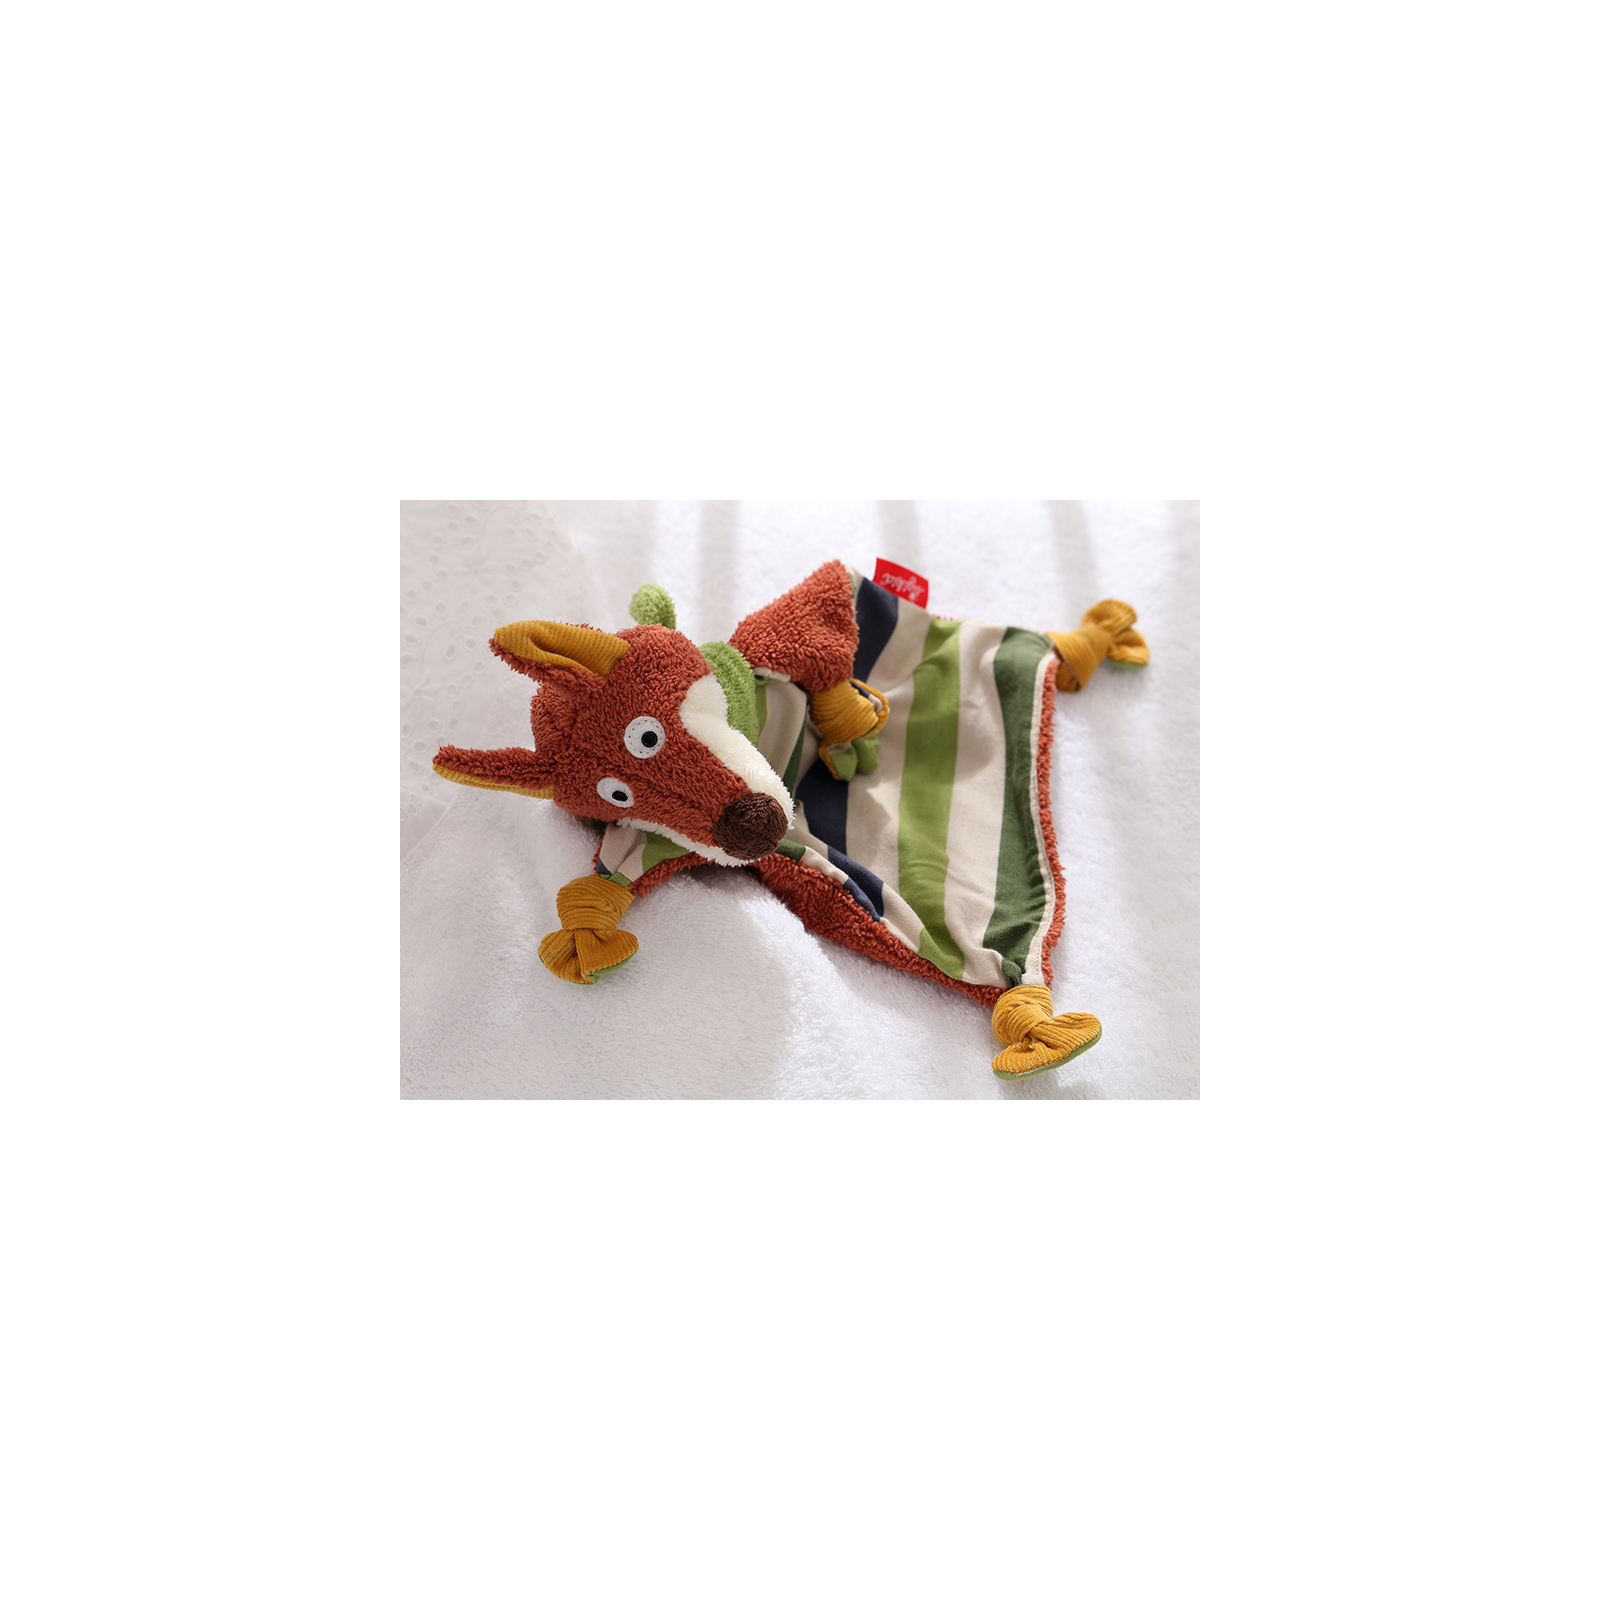 Развивающая игрушка Sigikid игрушка-кукла Лис (41340SK) изображение 6